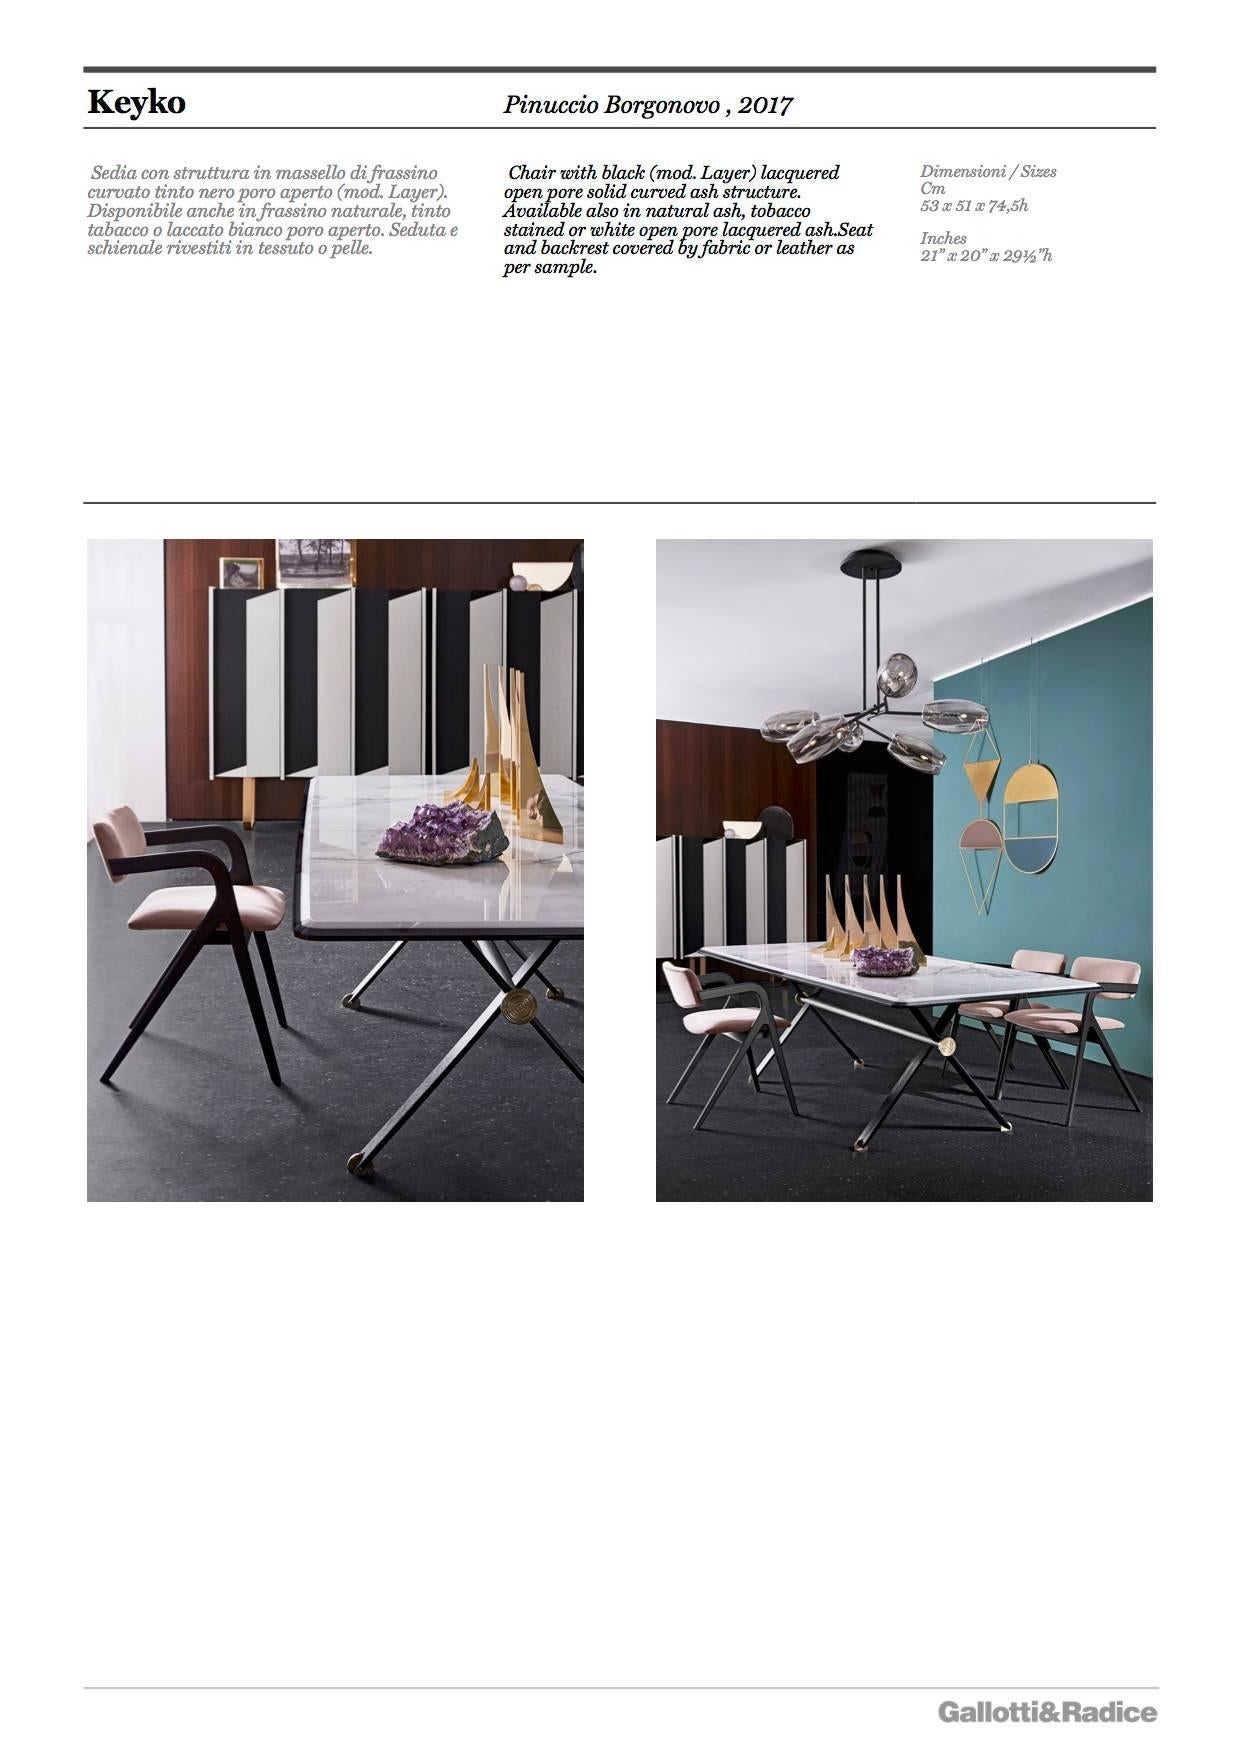 Contemporary Gallotti and Radice Keyko Chair by Pinuccio Borgonovo For Sale